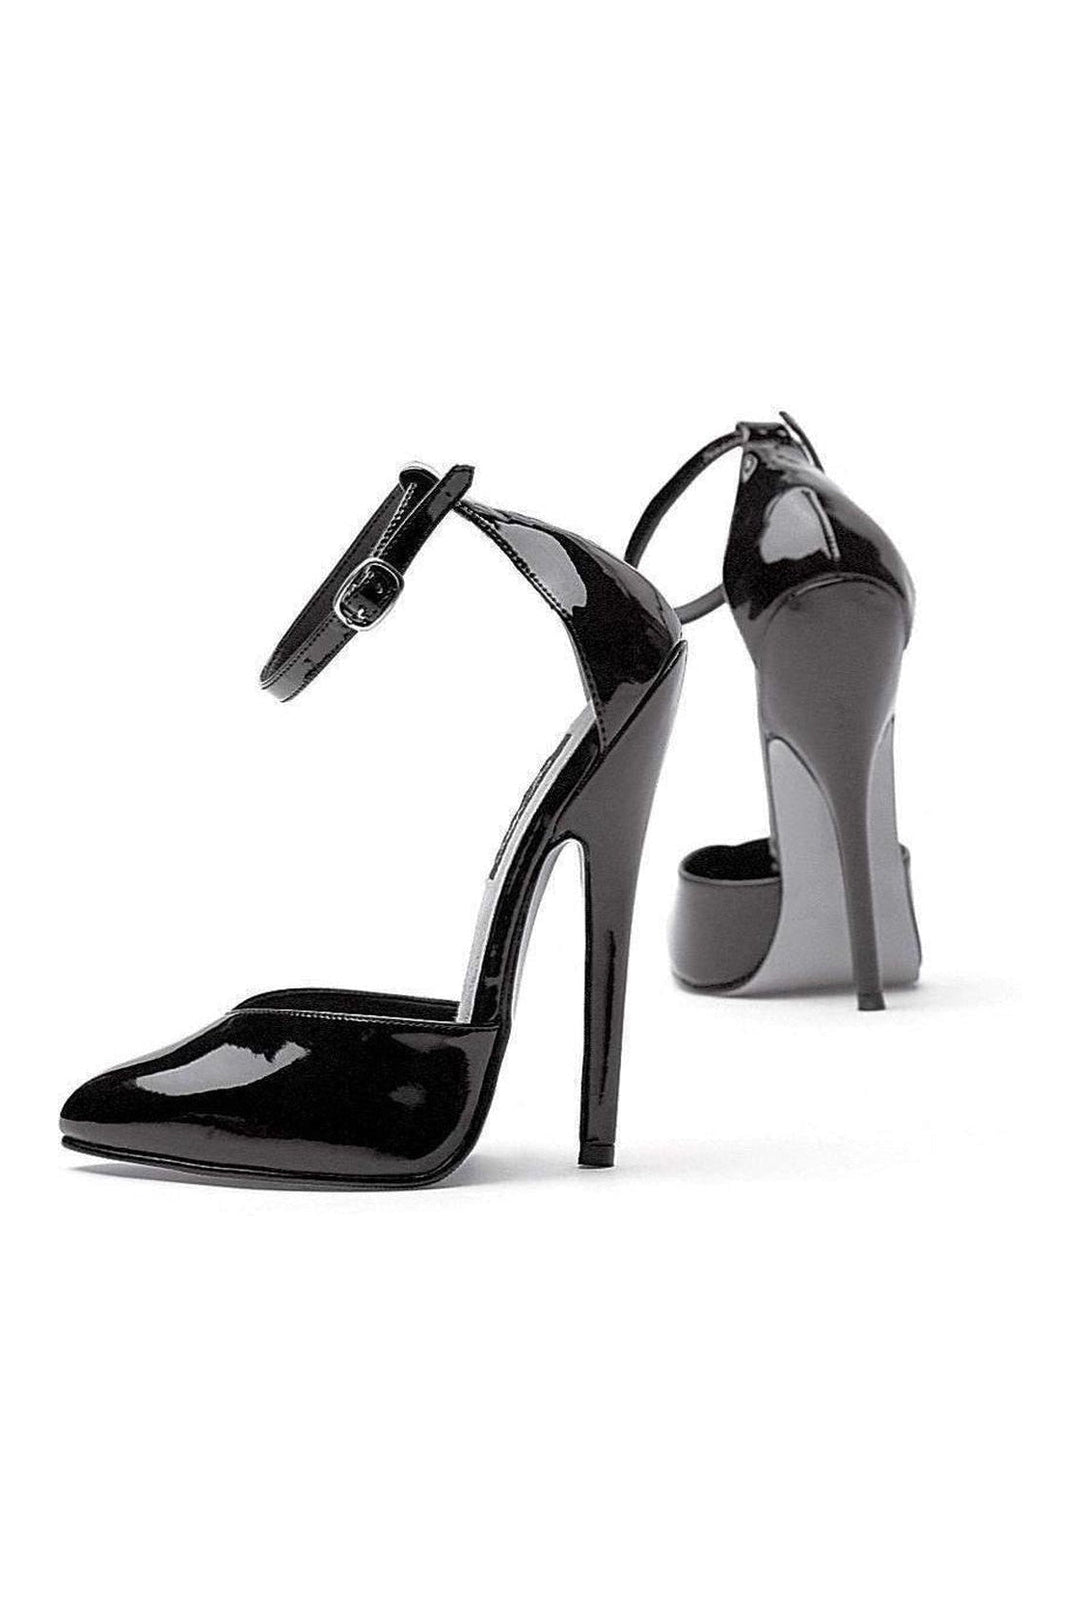 8265 Pump | Black Patent-Pumps- Stripper Shoes at SEXYSHOES.COM